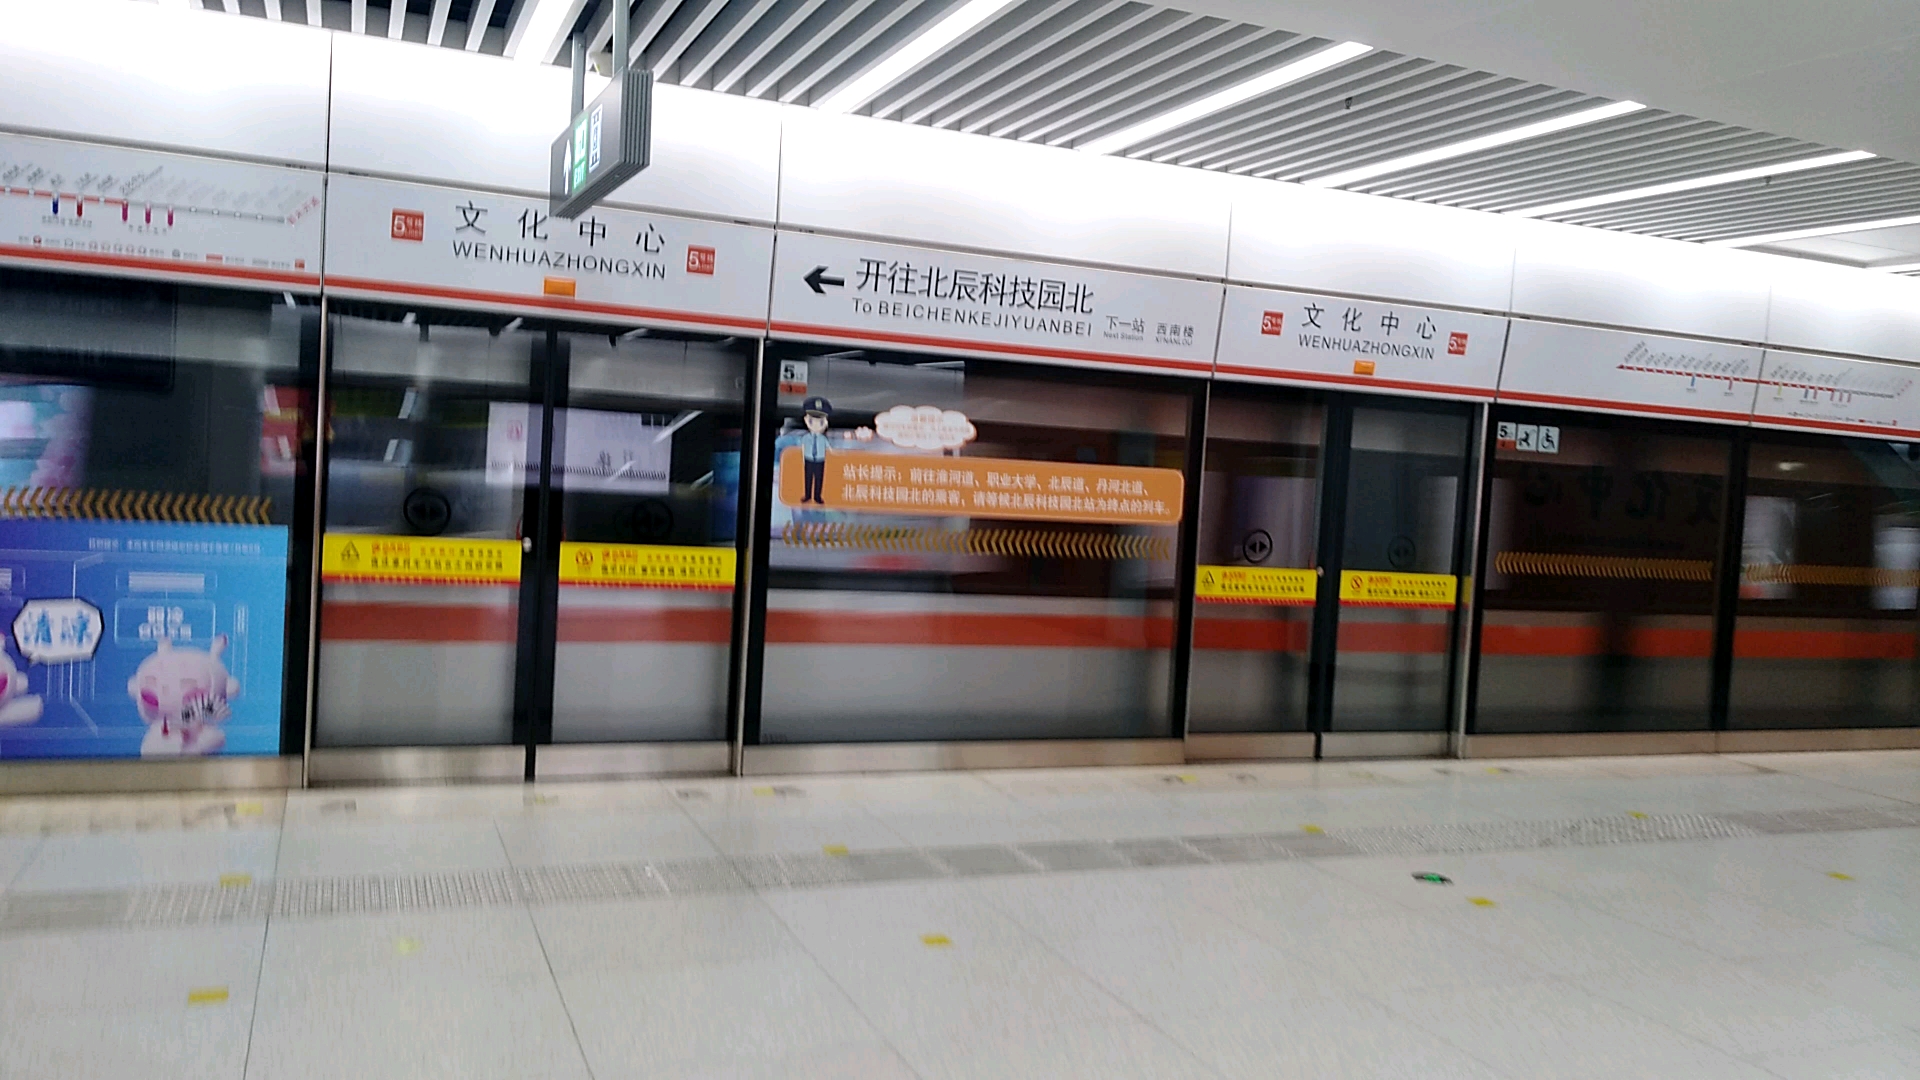 【是故障吗】偶遇天津地铁5号线开往北辰科技园北方向的列车:本次列车